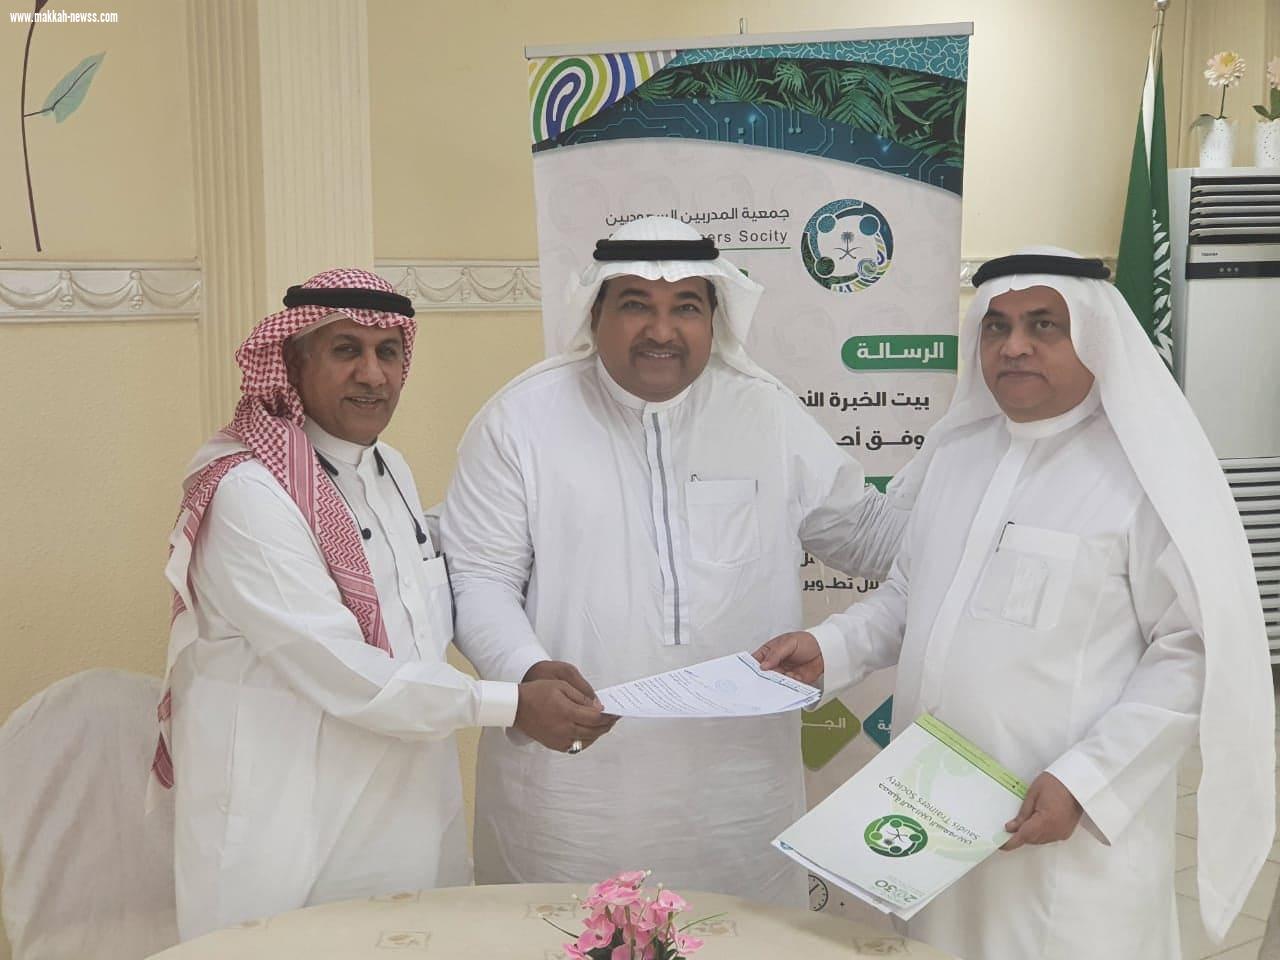 اتفاقية شراكة وتعاون بين جمعية المدربين السعوديين ومجموعة بشاوري للتنمية والاستثمار